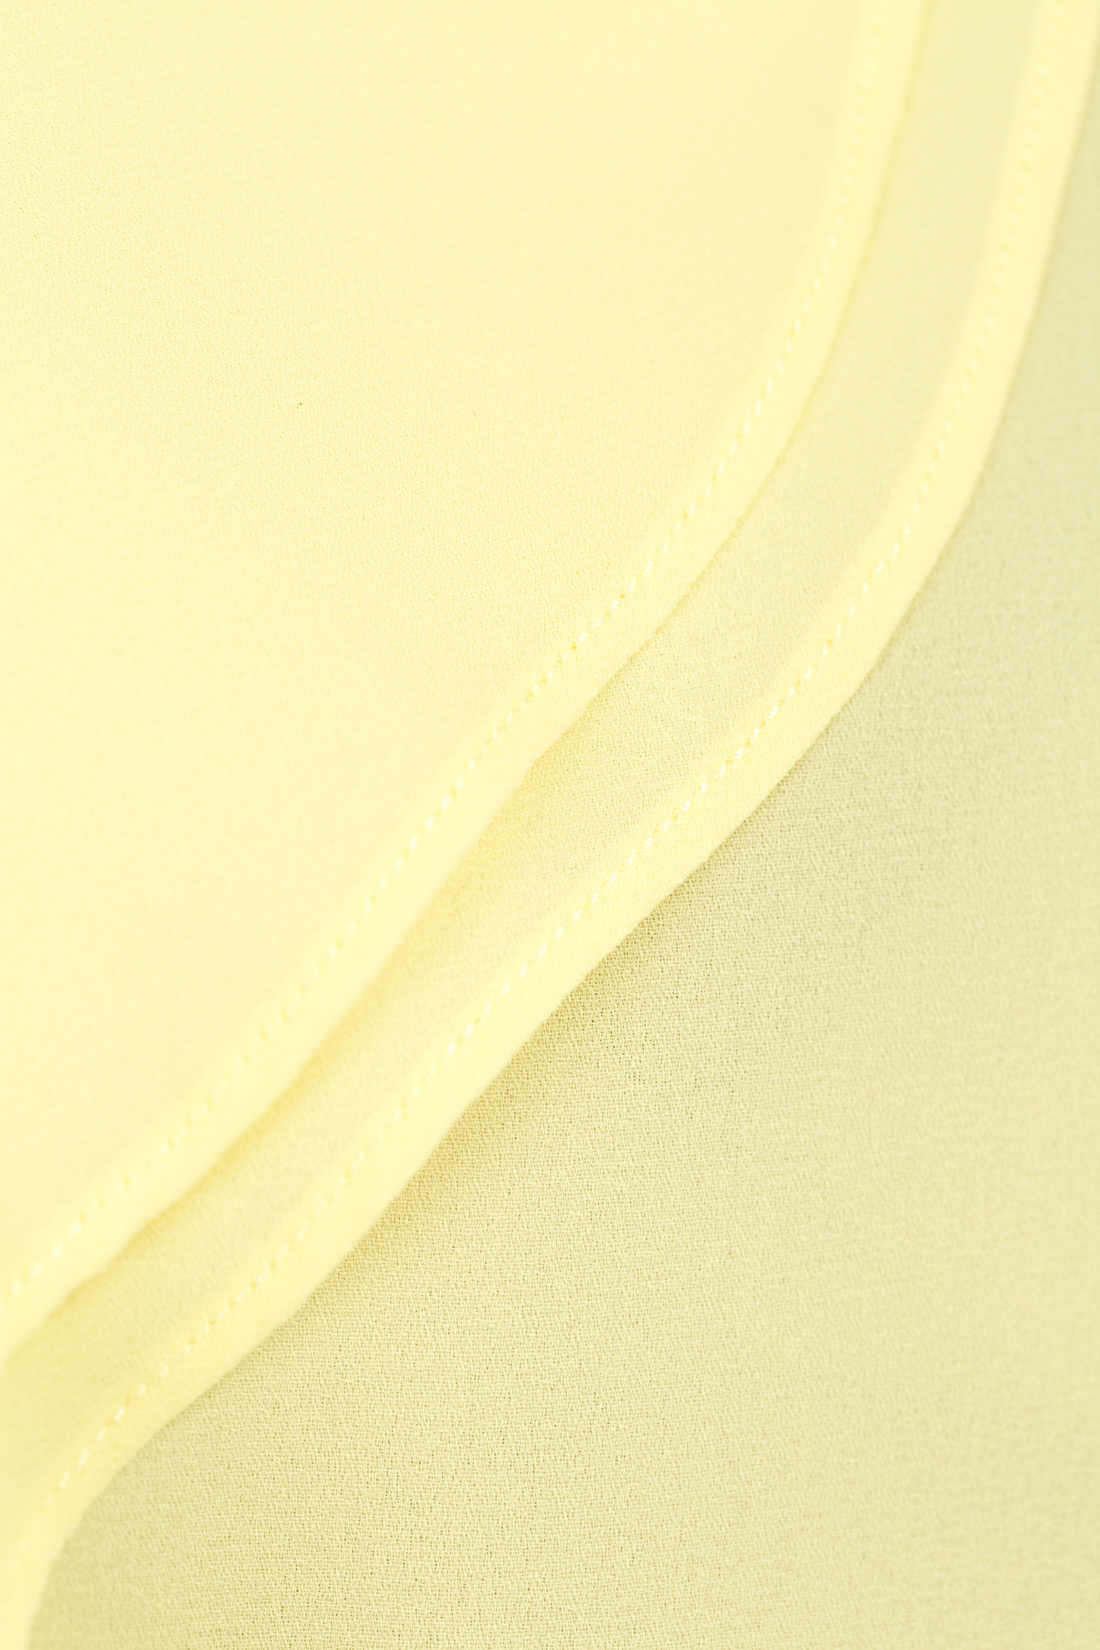 Топ с воланом (арт. baon B267025), размер L, цвет желтый Топ с воланом (арт. baon B267025) - фото 3